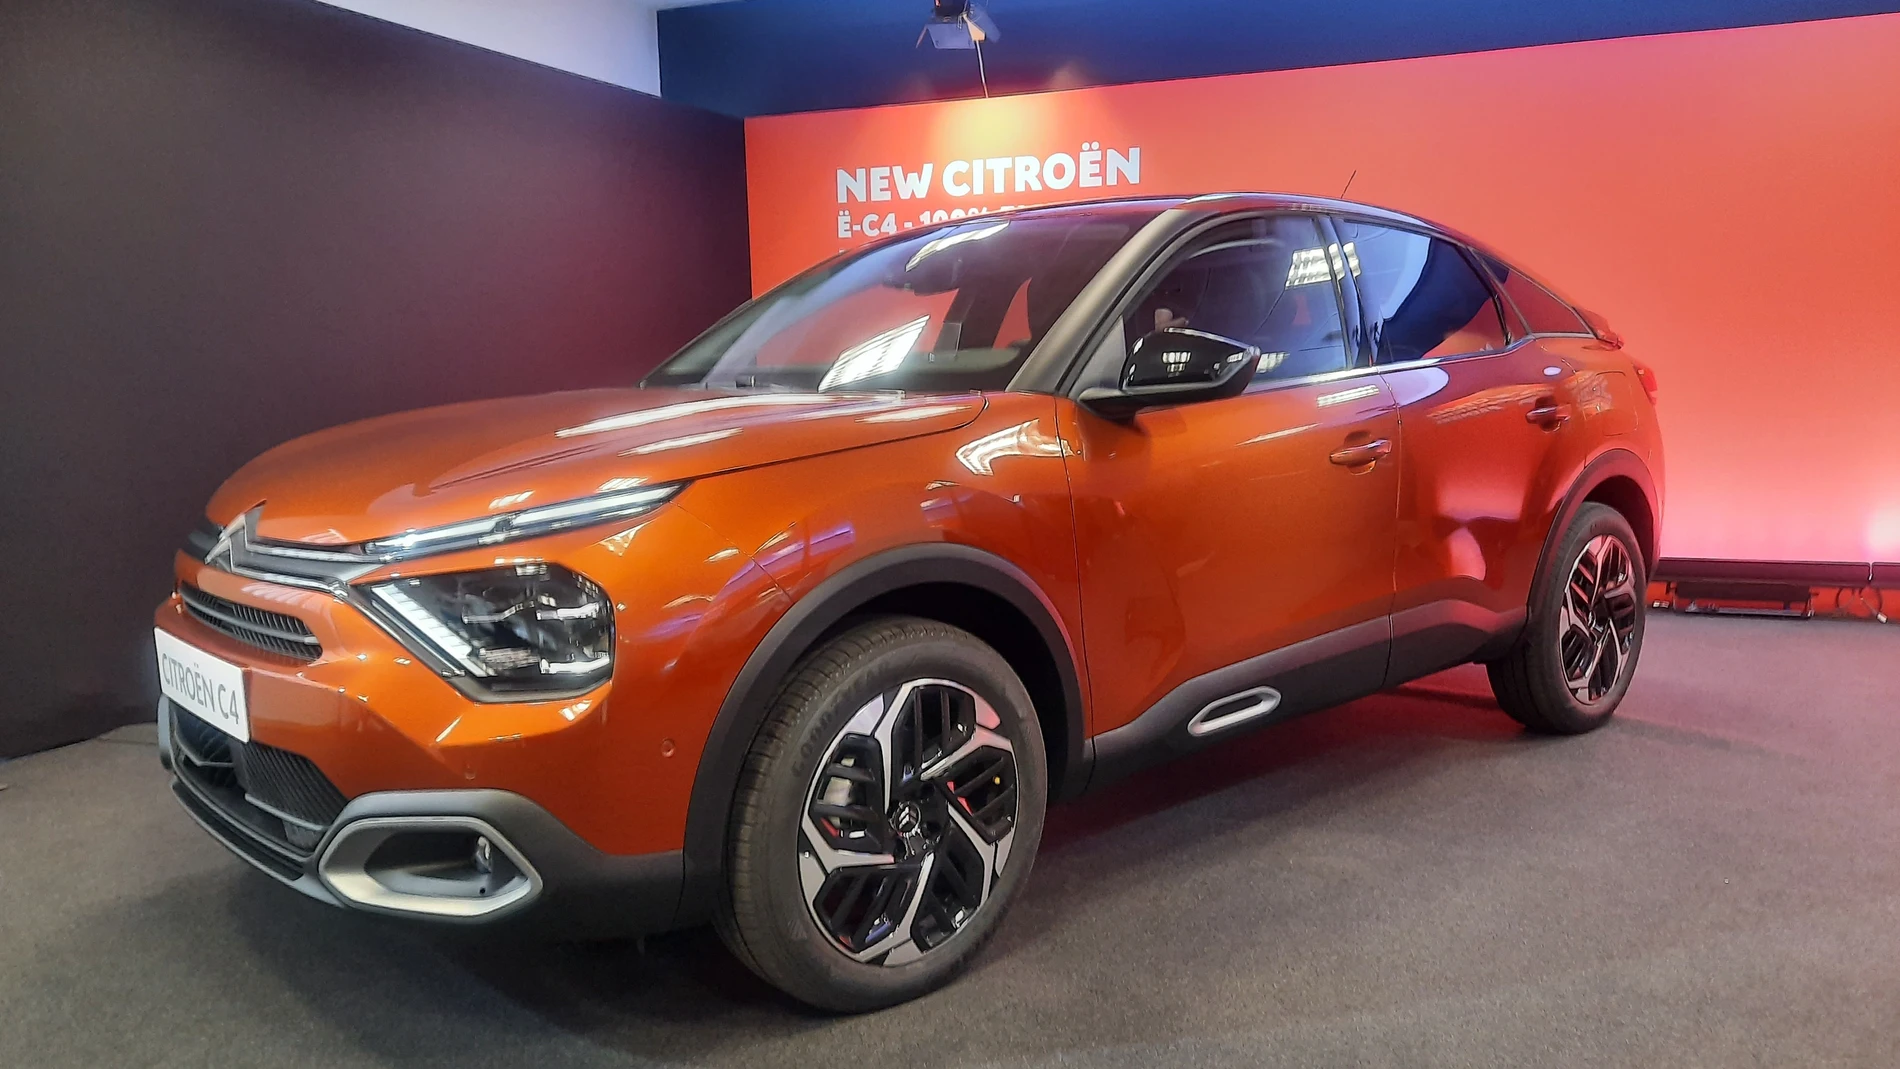 Economía/Motor.- (AMP) Citroën fabricará en exclusiva mundial en Madrid el nuevo C4, con una inversión de 144 millones